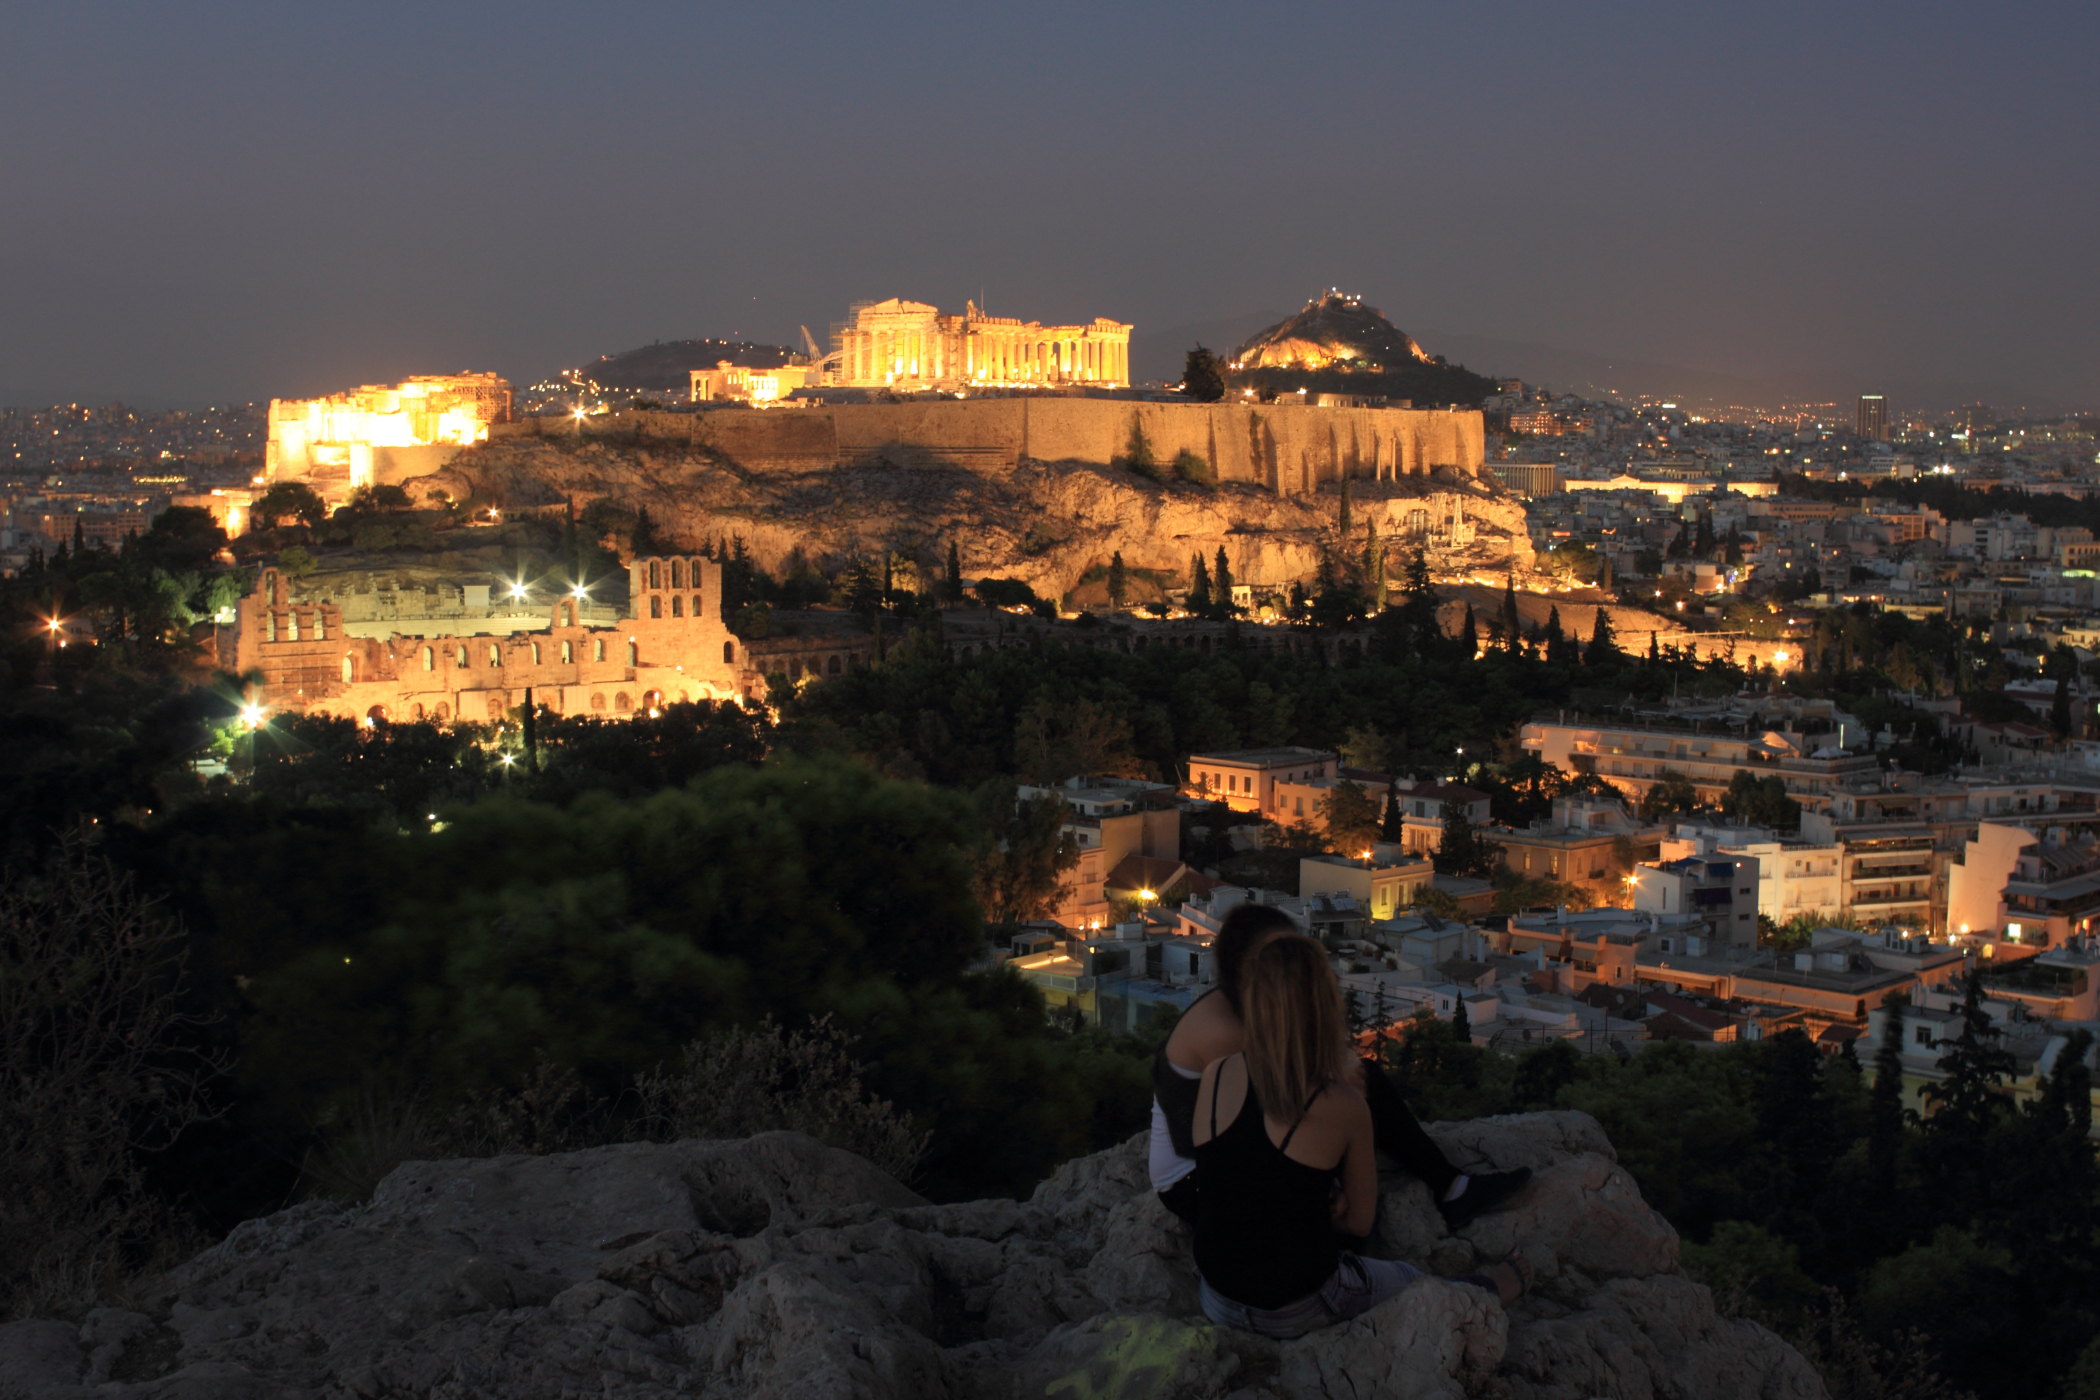 携程希腊8日（雅典、米岛、圣岛）游记 第一印象：  太漂亮了，这几个景点都是物超所值。无论是色友还是